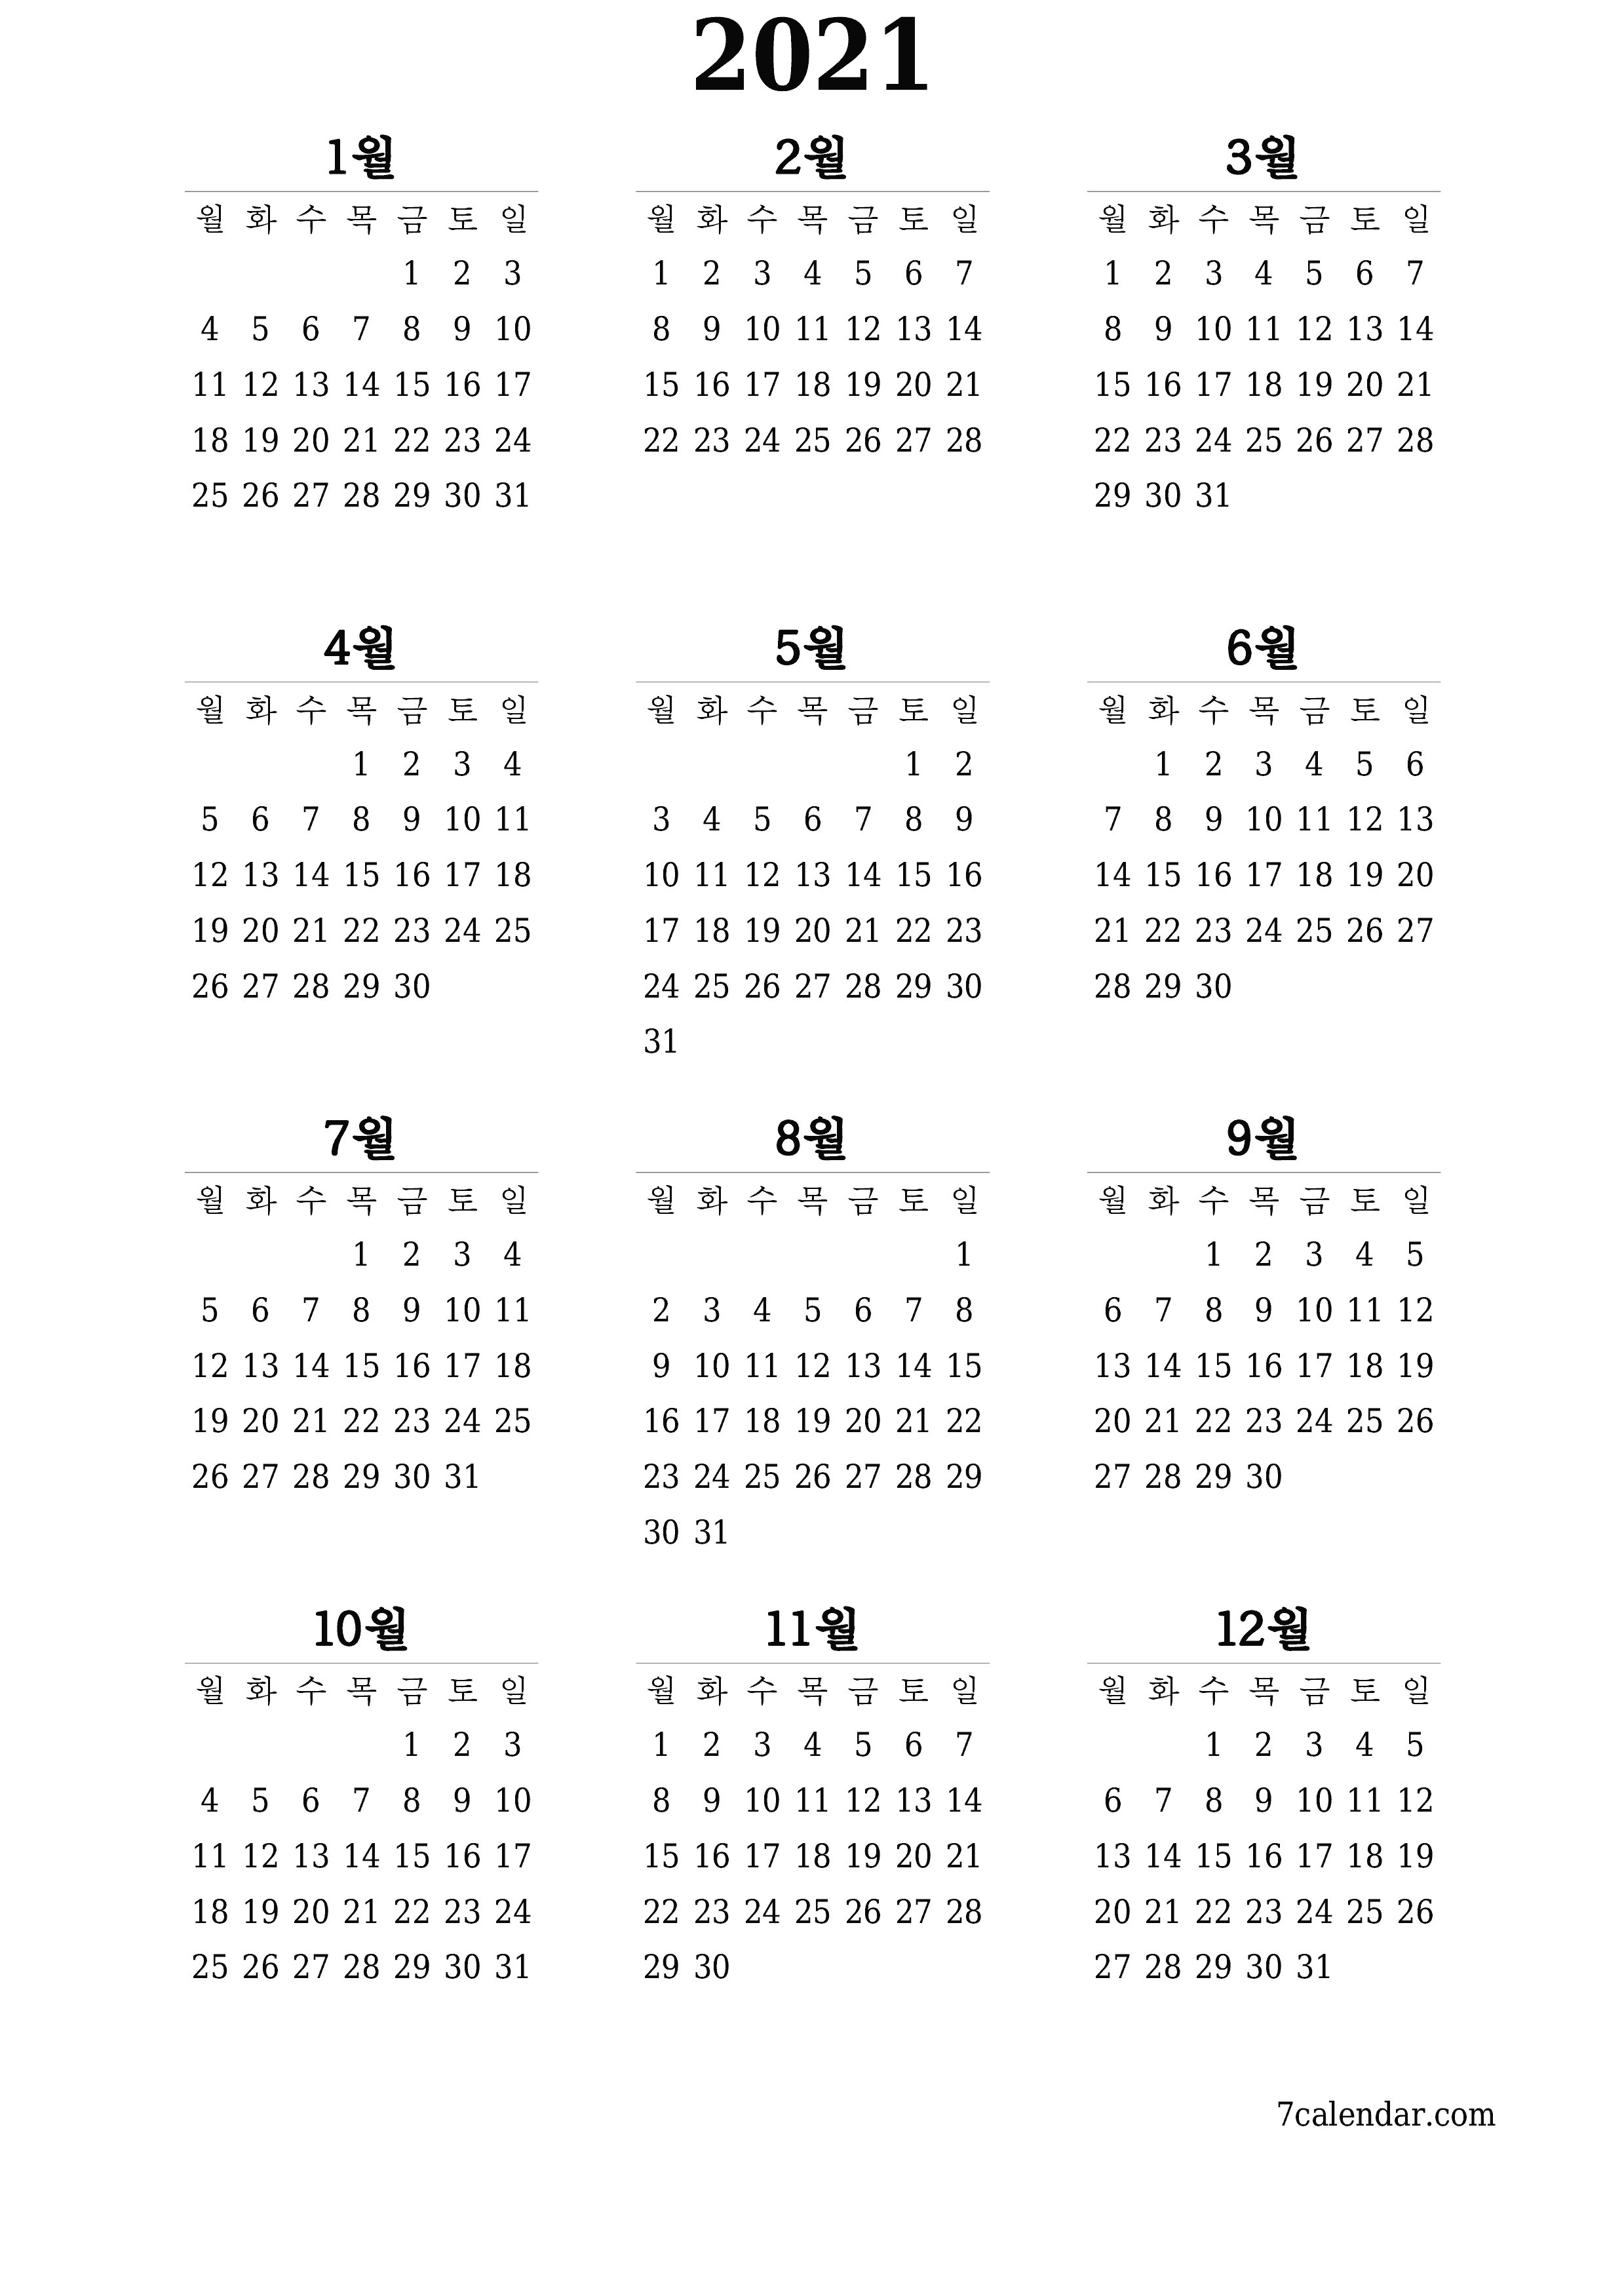 메모가있는 2021 년의 연간 플래너 캘린더 비우기, 저장하고 PDF PNG Korean-7calendar.com으로 인쇄